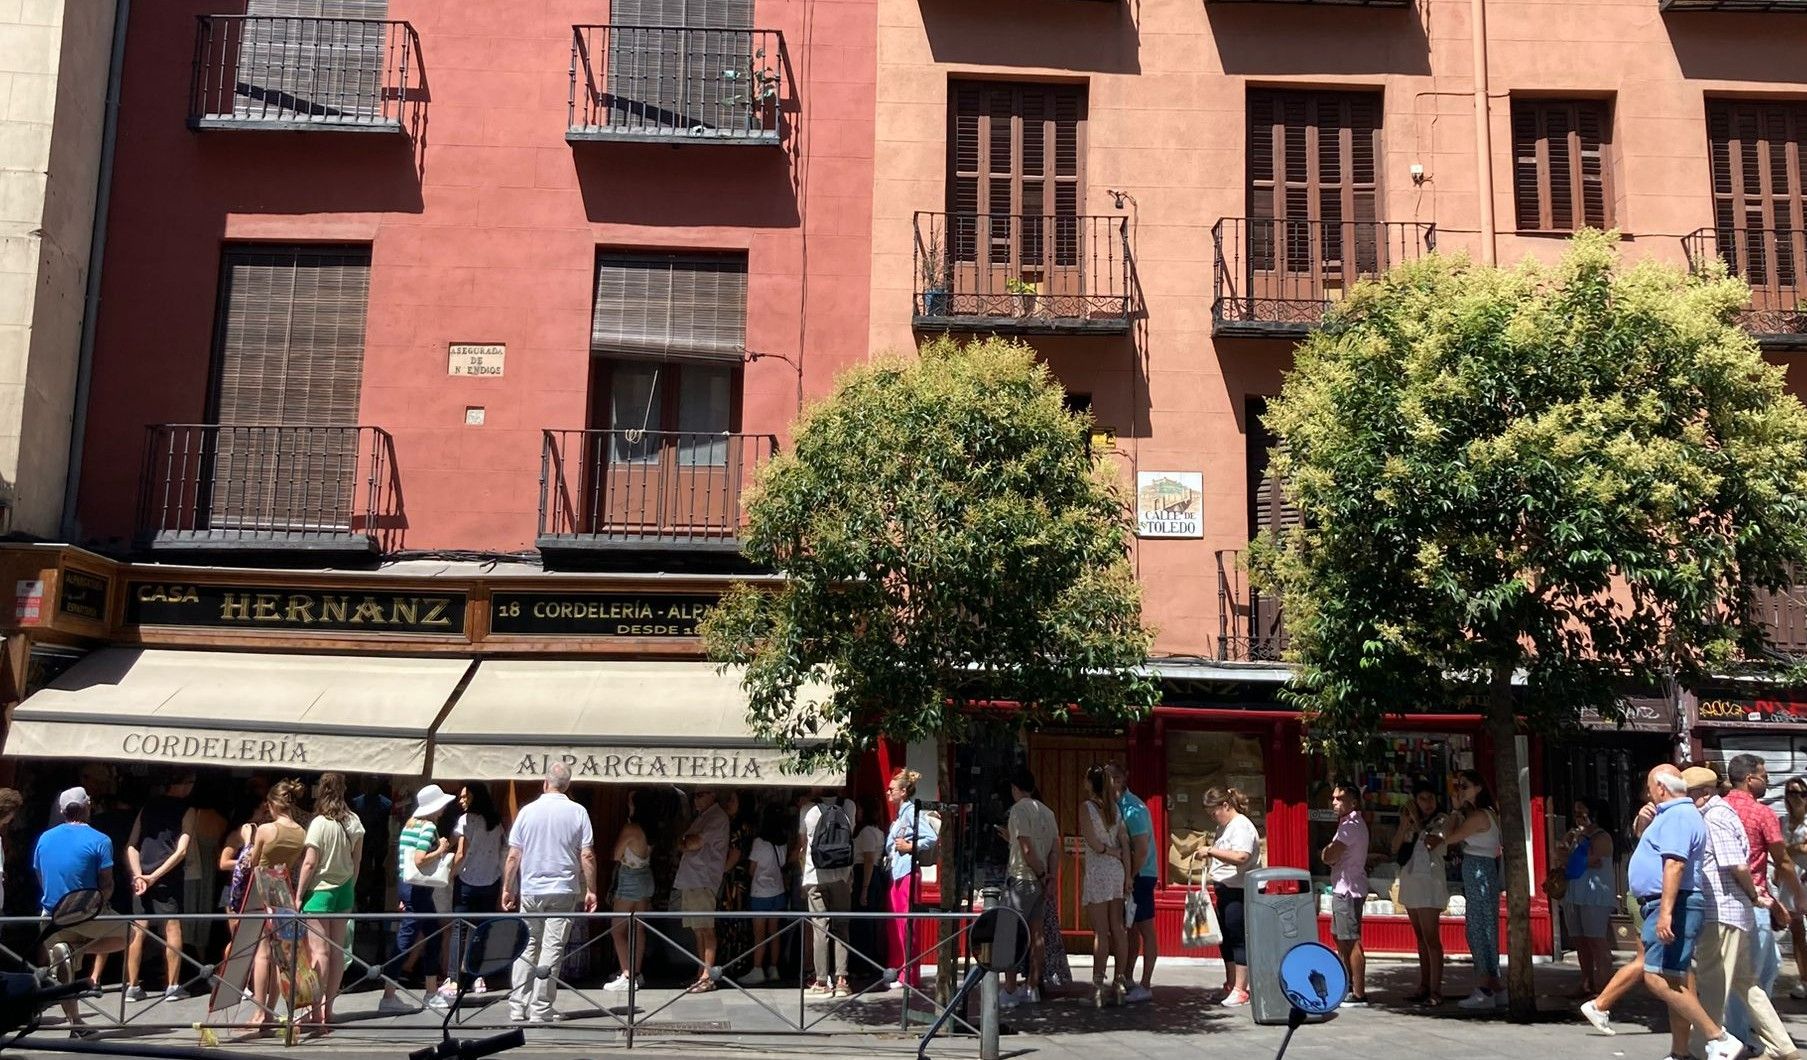 CASA HERNANZ | ¿Por qué la gente hace colas de una hora a 40 grados en esta  alpargatería de Madrid?